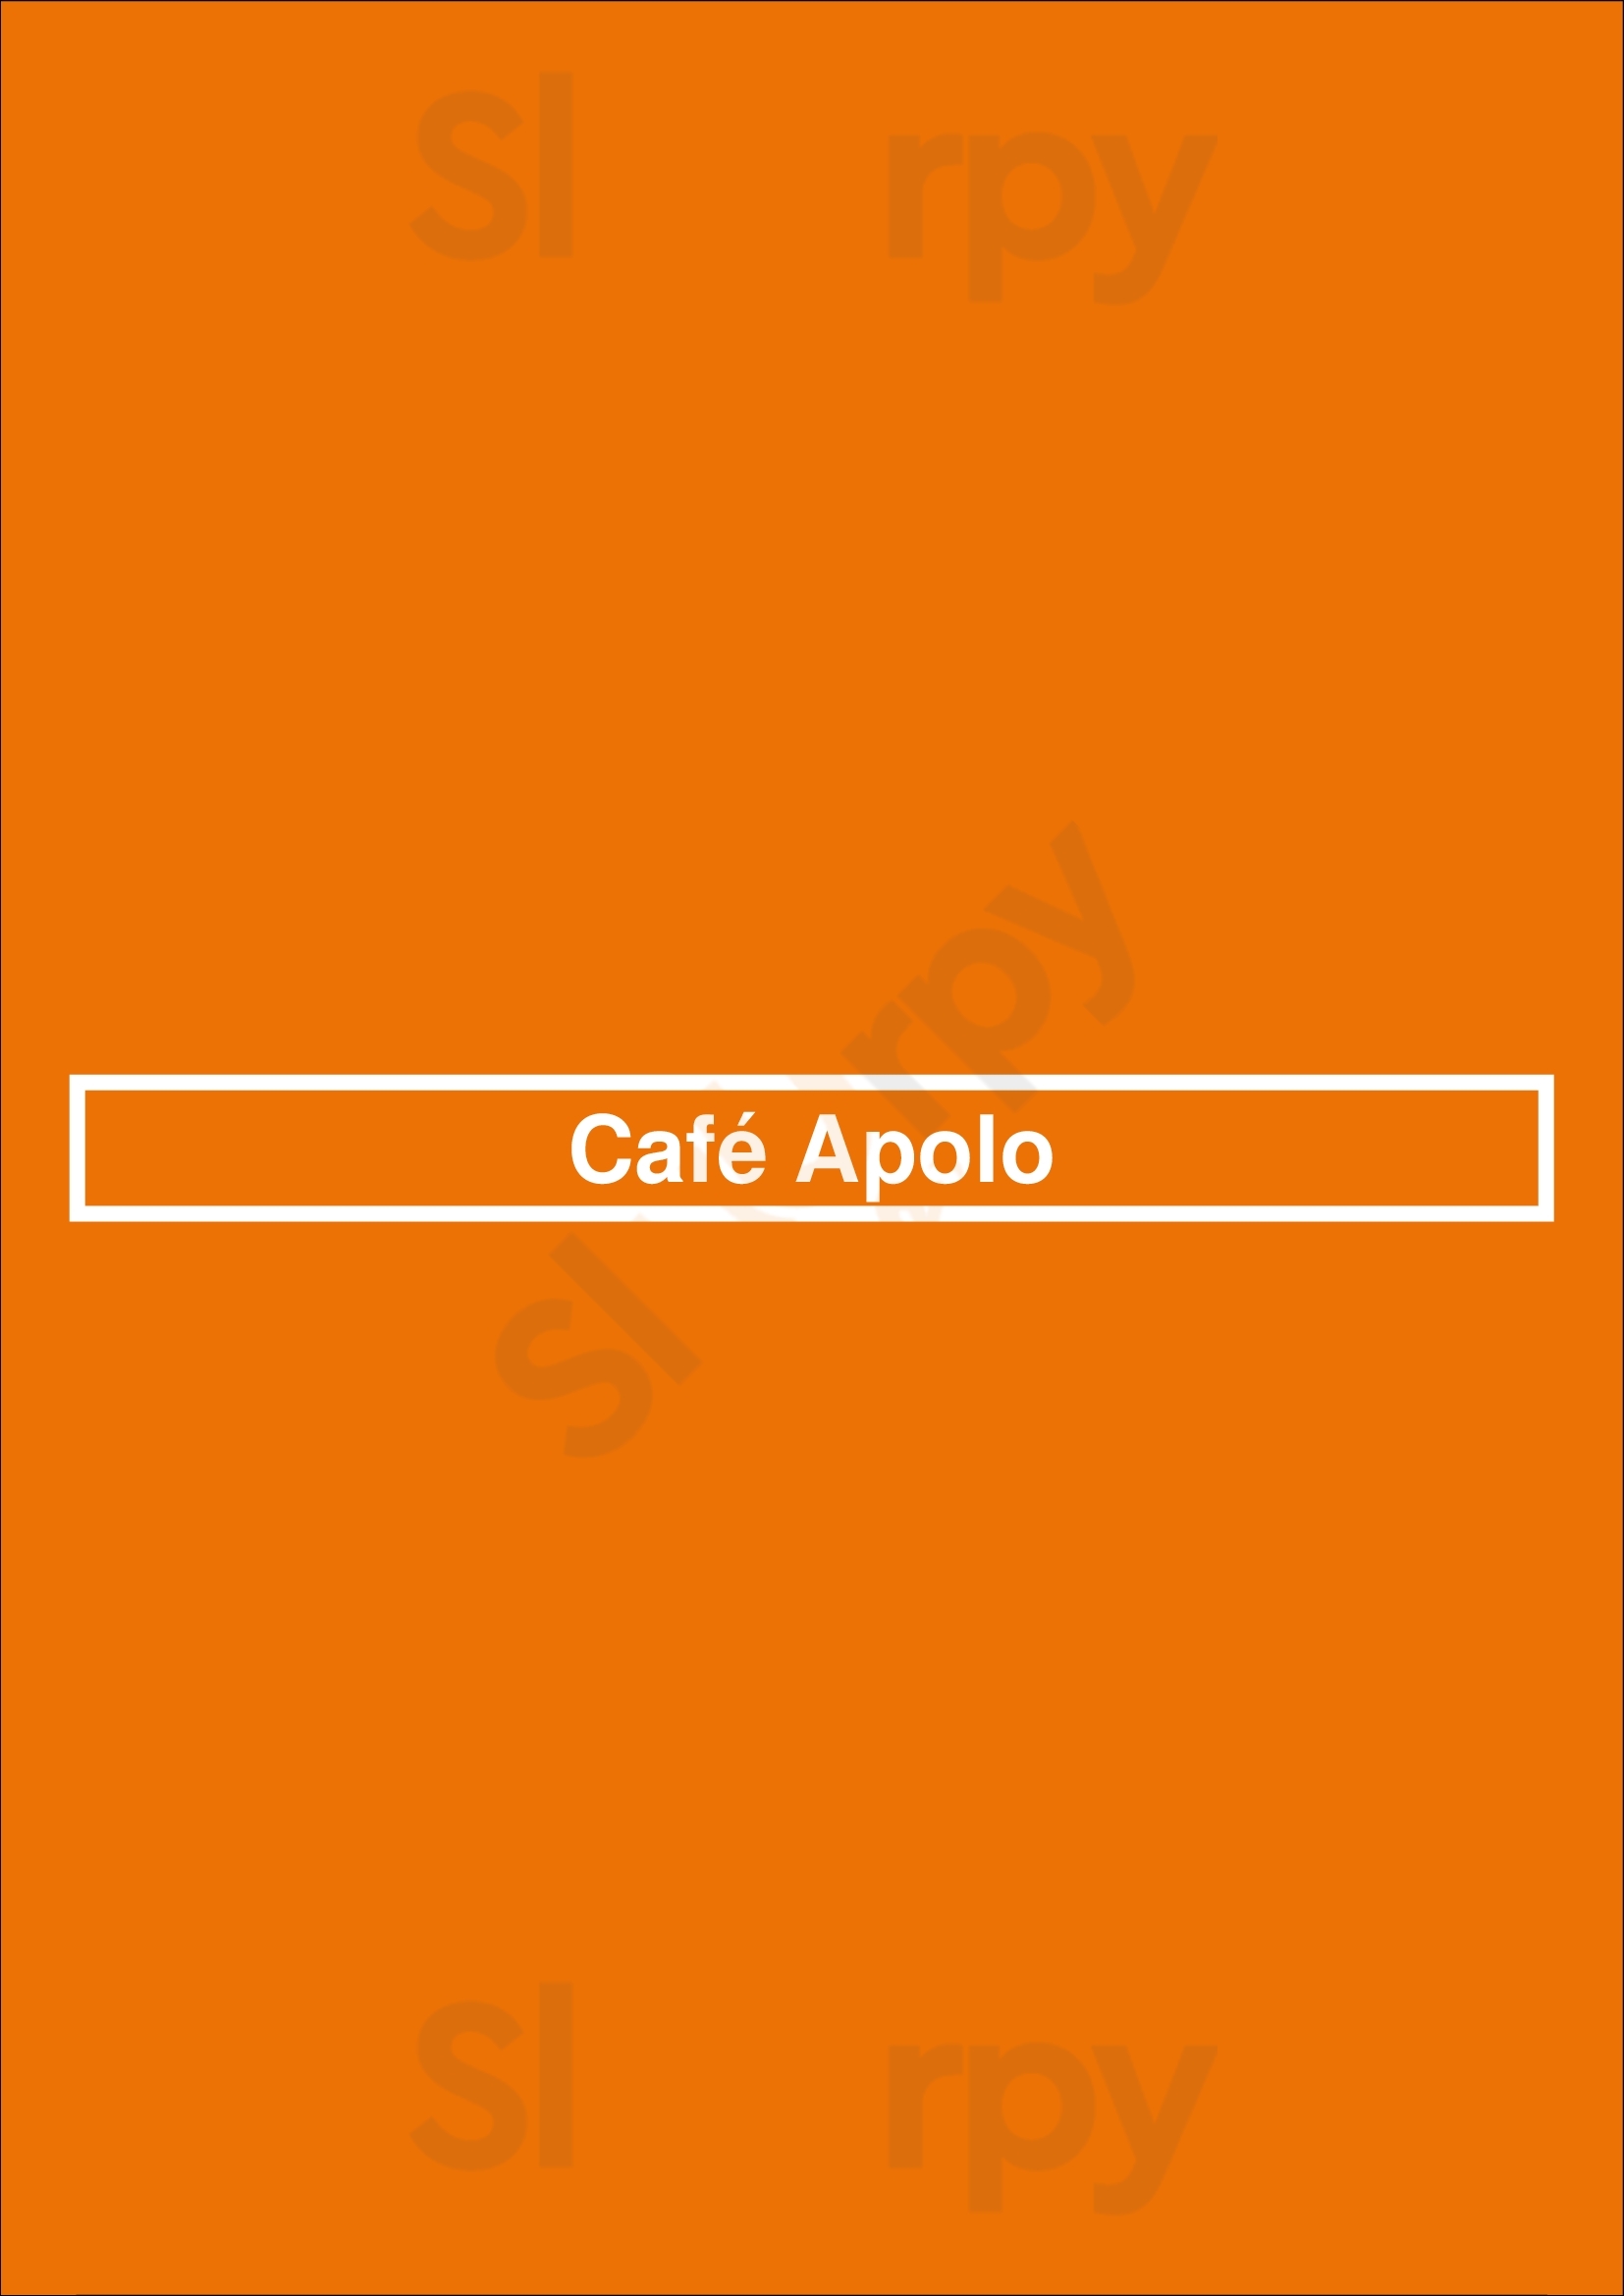 Café Apolo Funchal Menu - 1